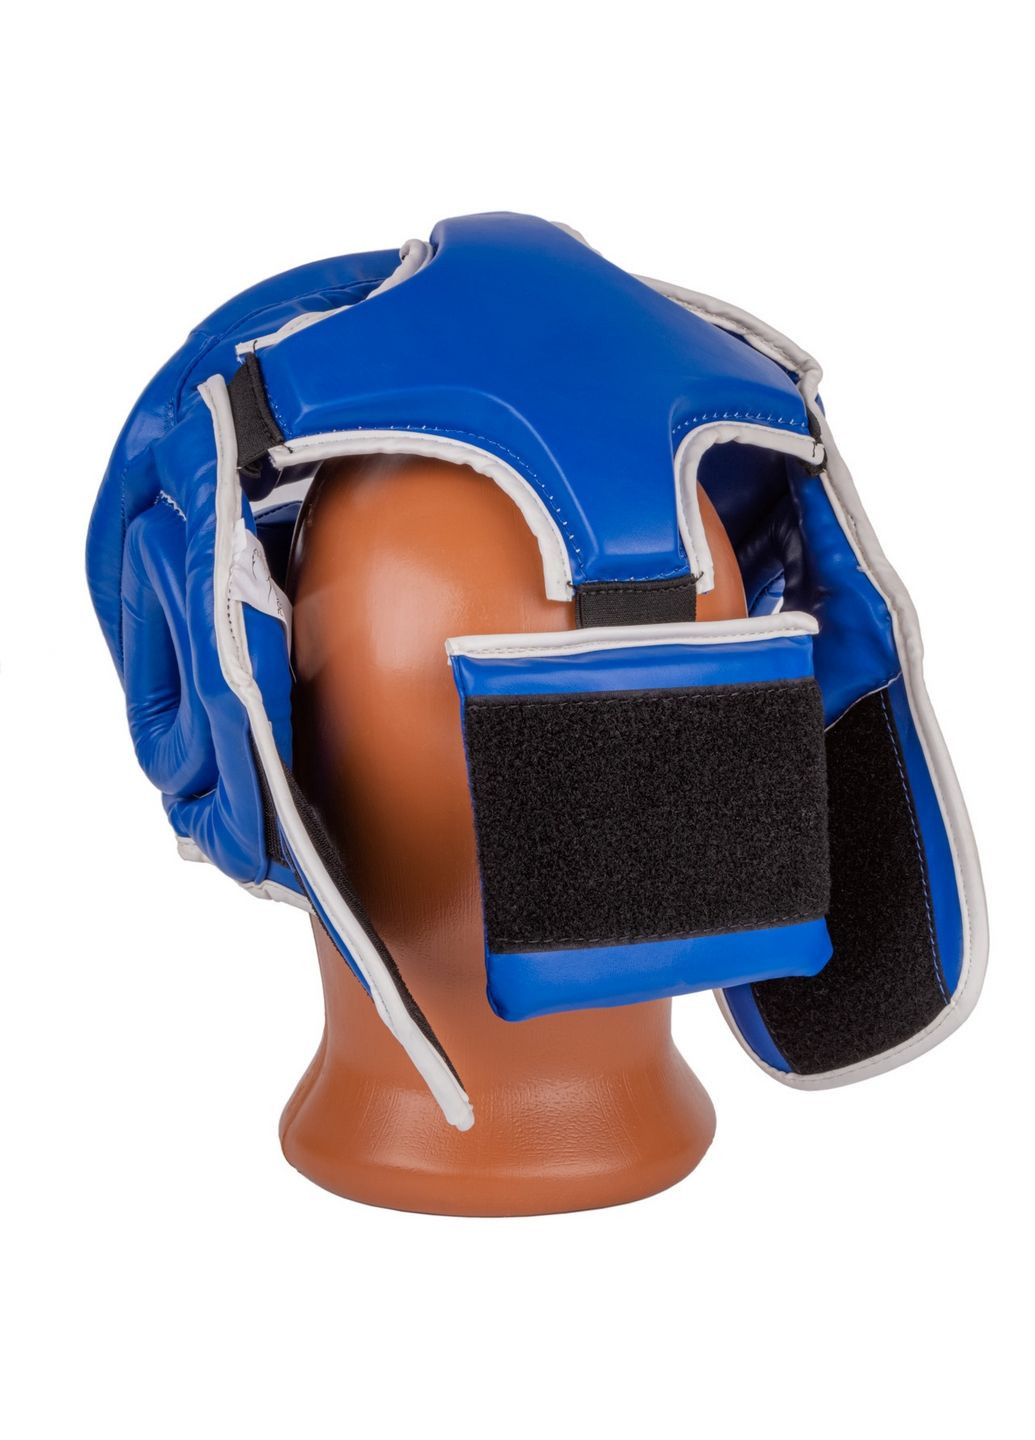 Боксерский шлем тренировочный PowerPlay (282591063)